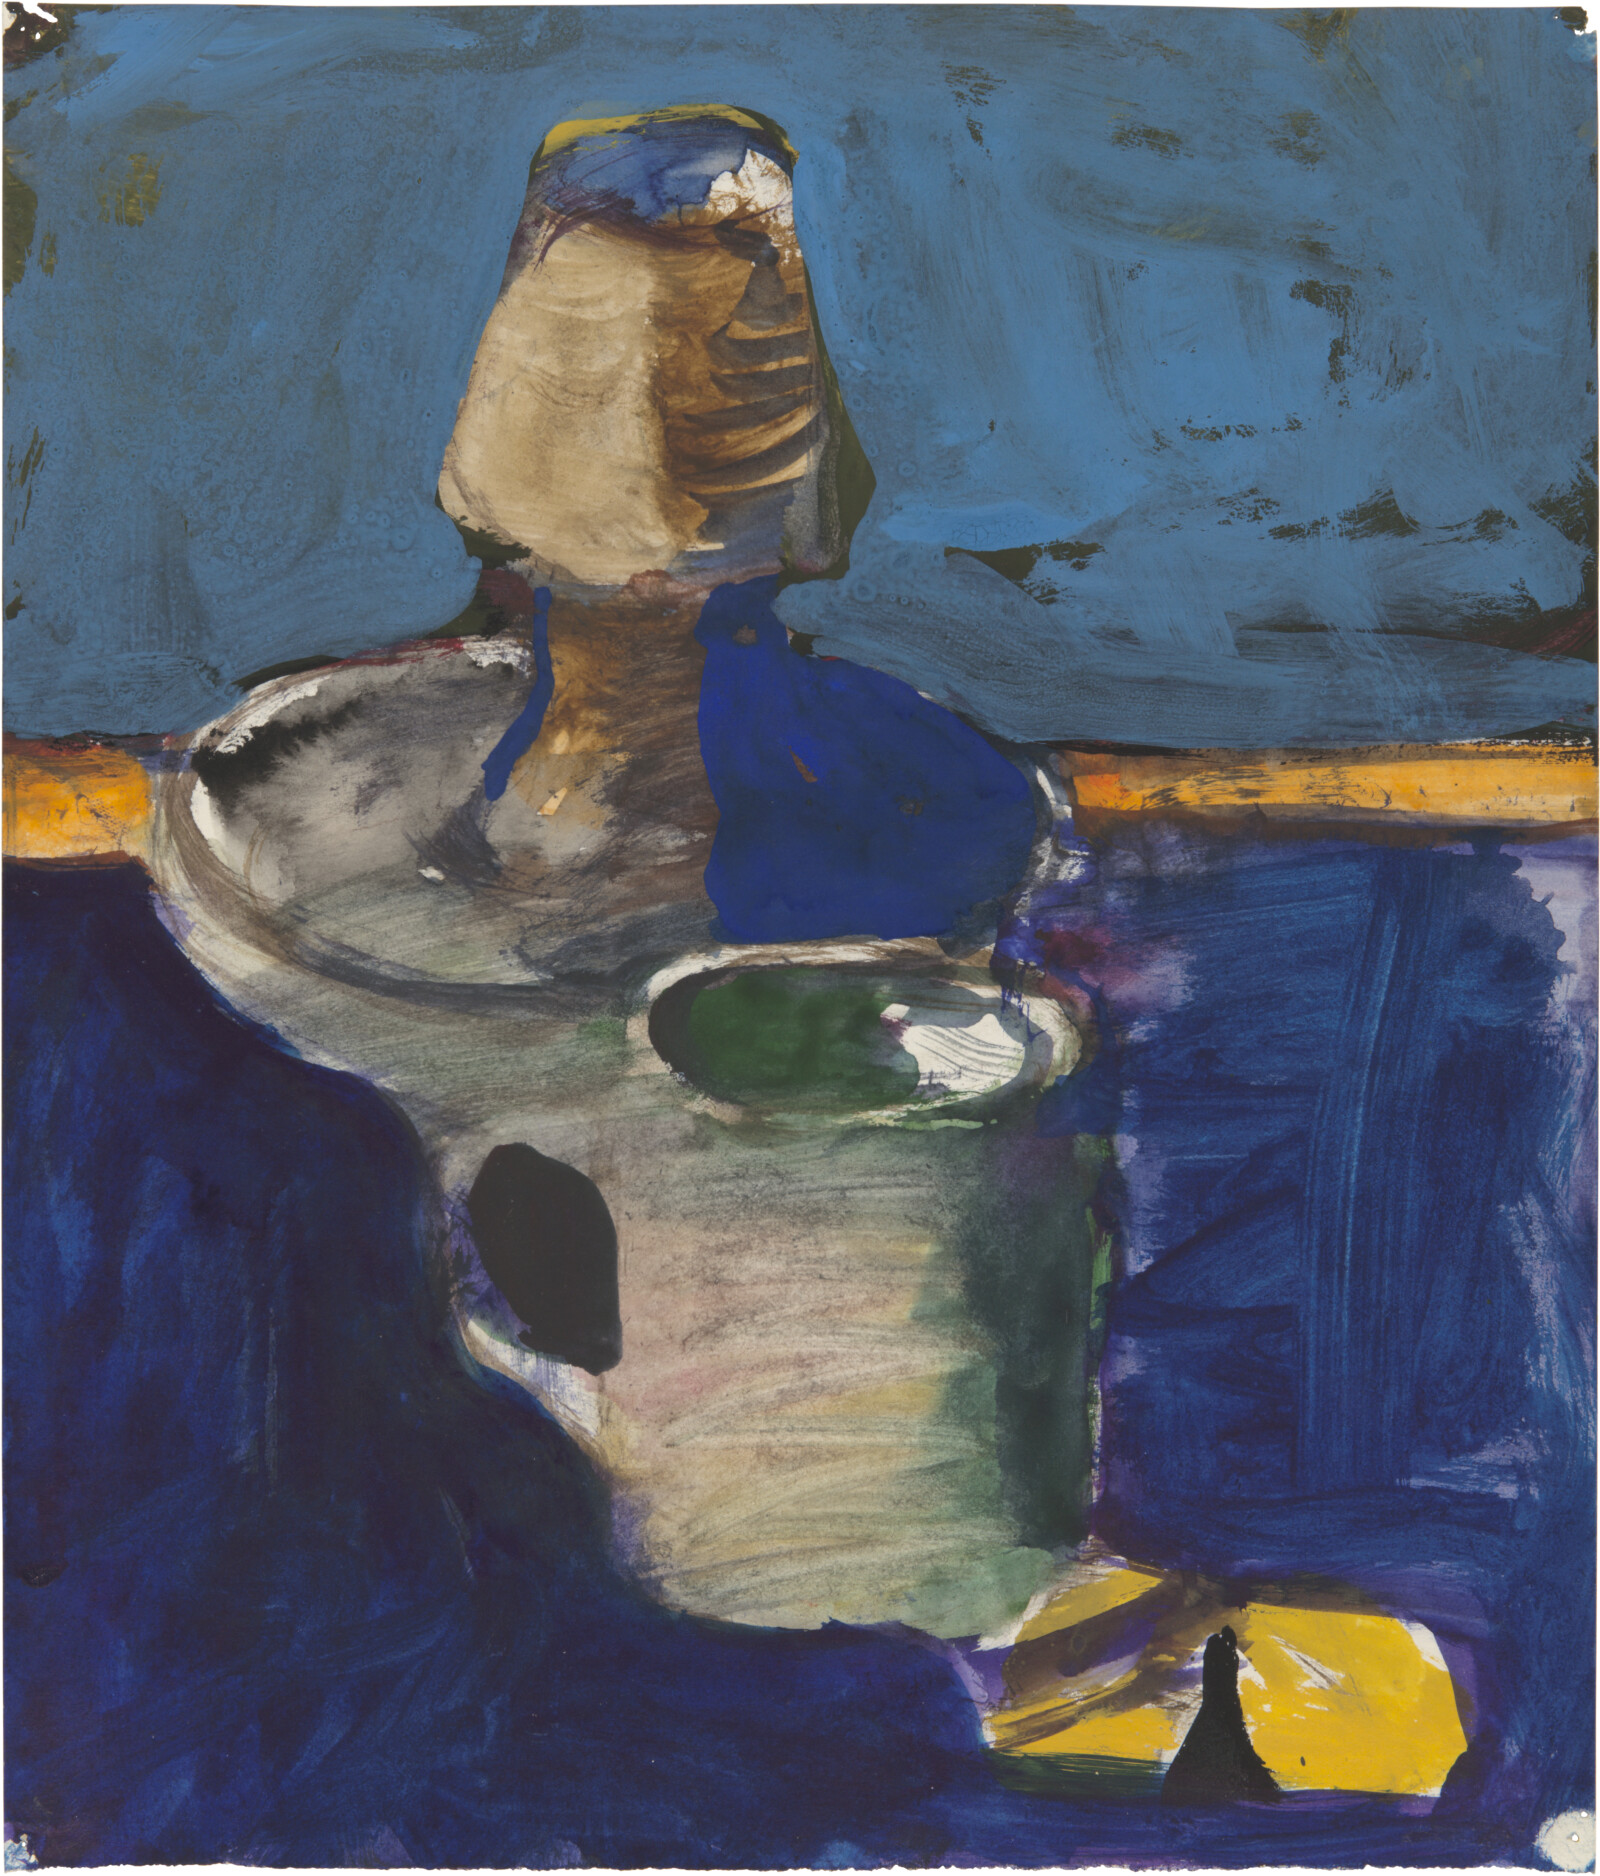 Richard Diebenkorn: Paintings and Drawings on Paper